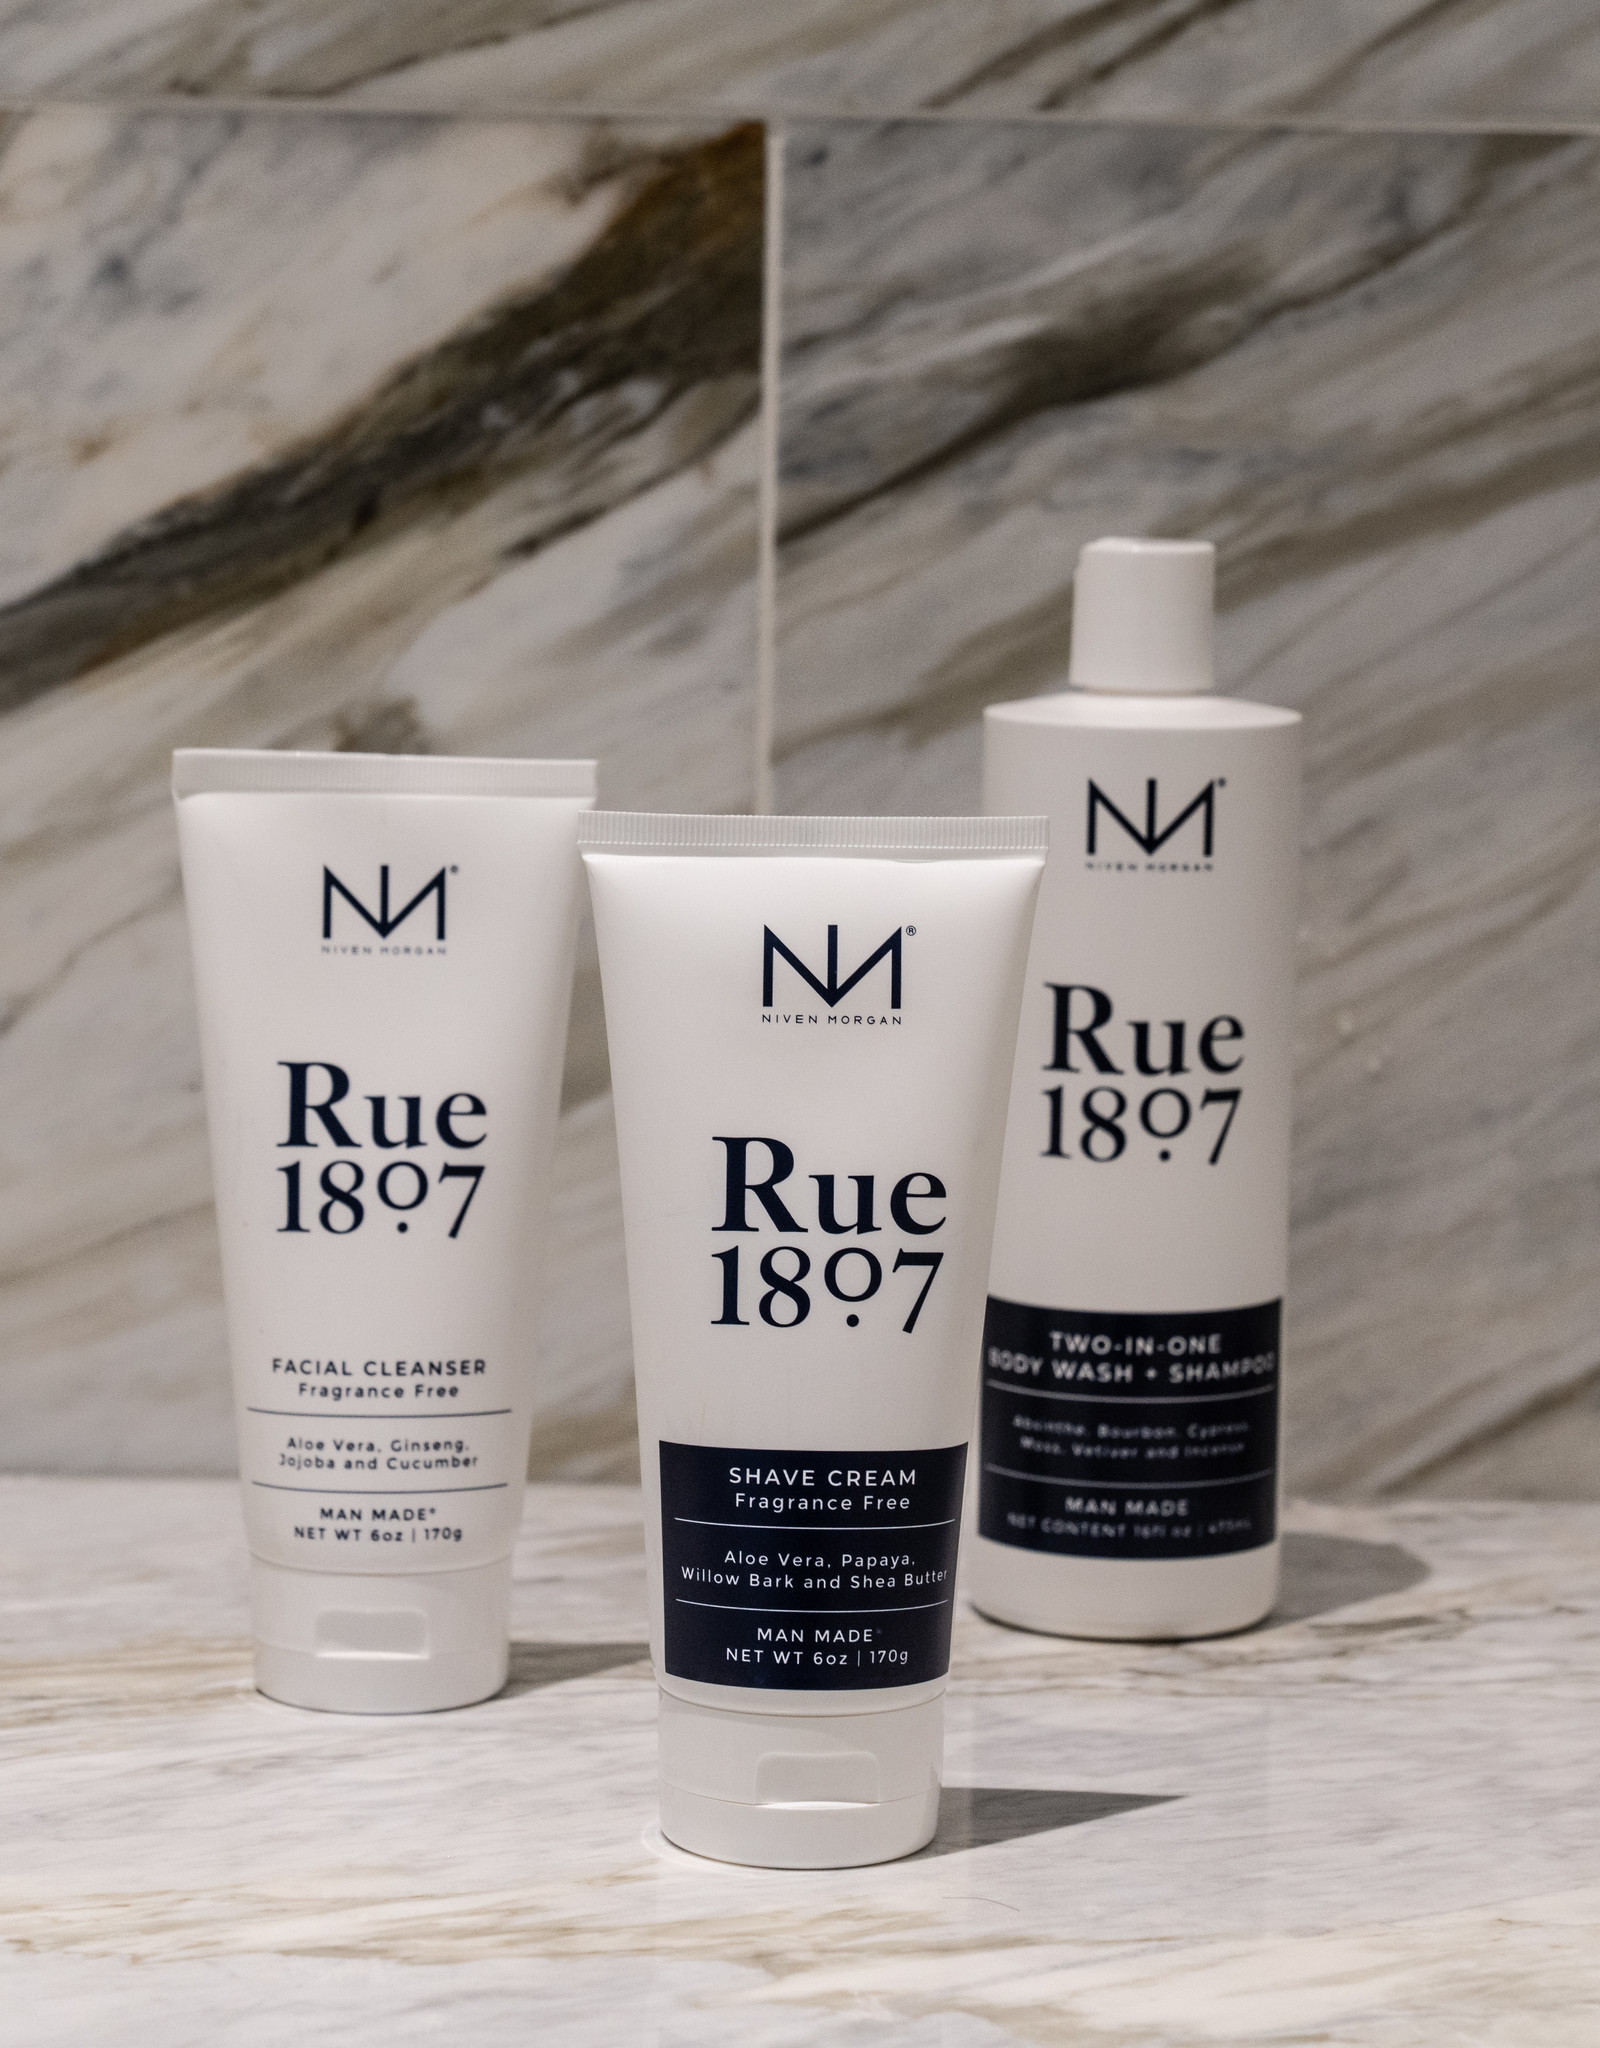 NM Rue 1807 Shave Cream 3 oz